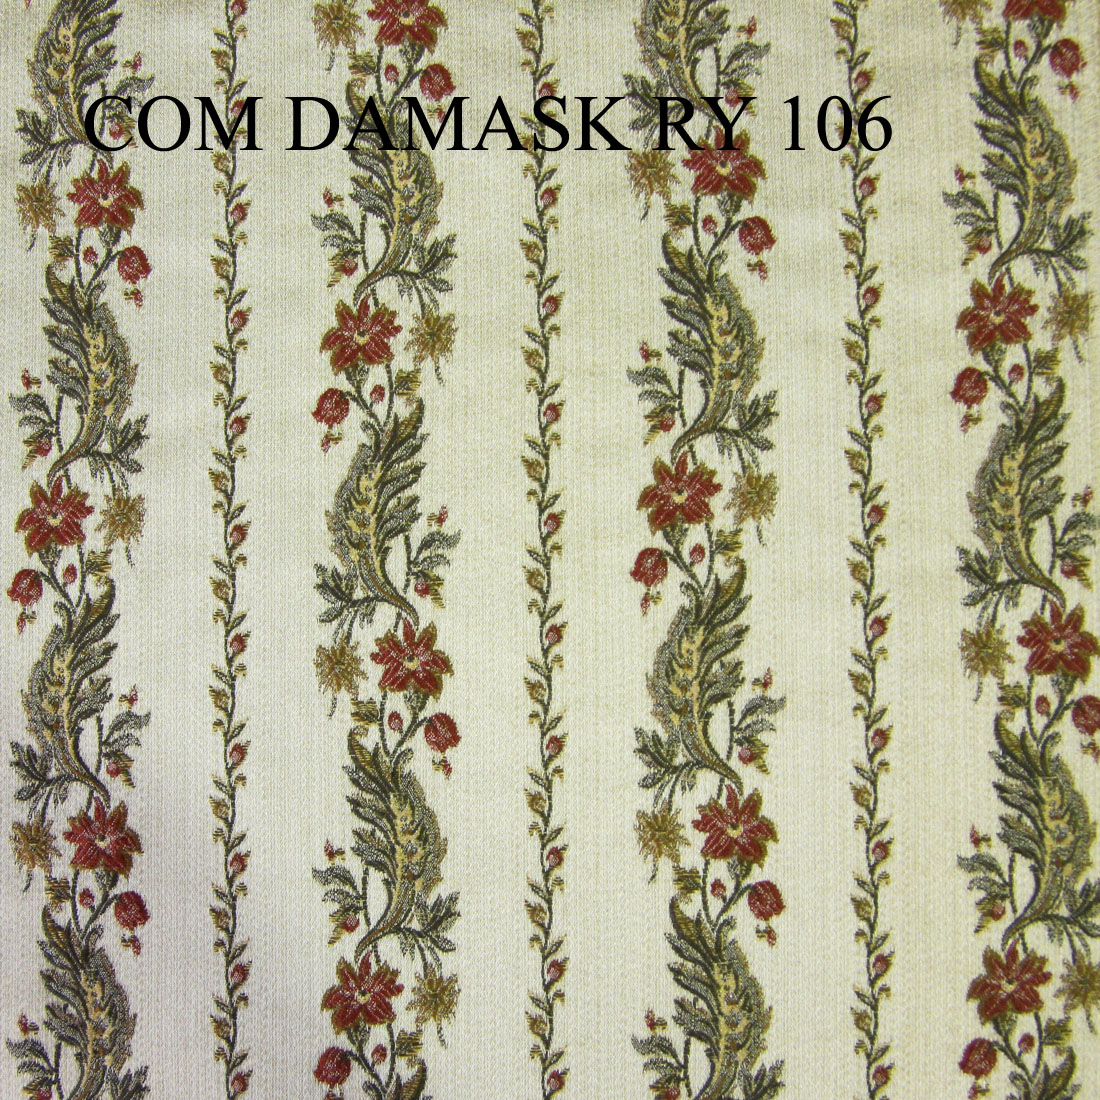 COM DAMASK RY 106